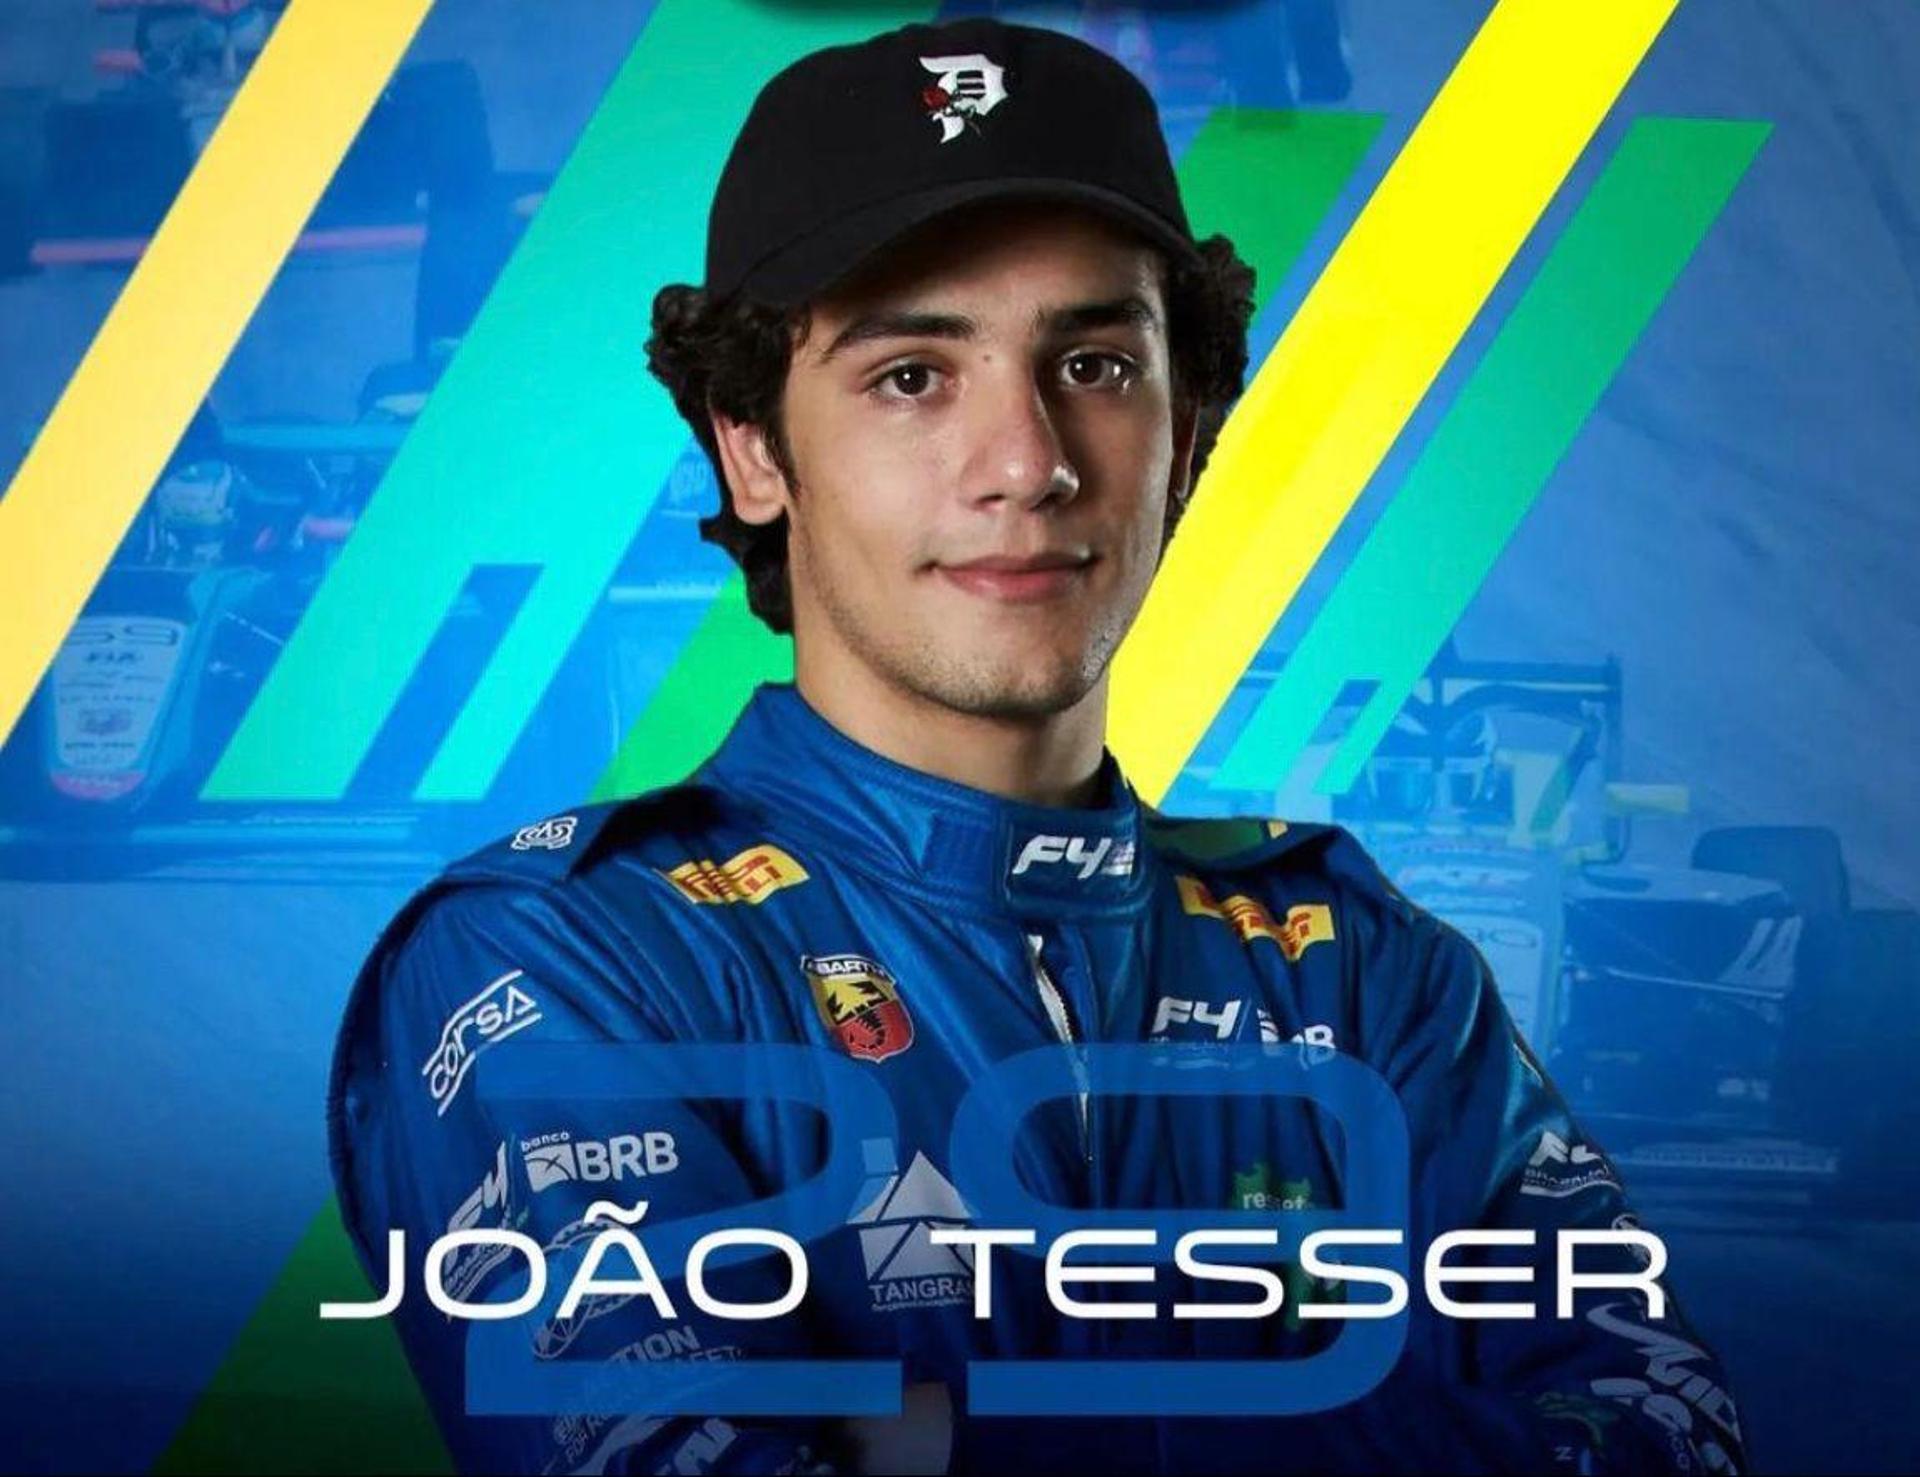 João Tesser